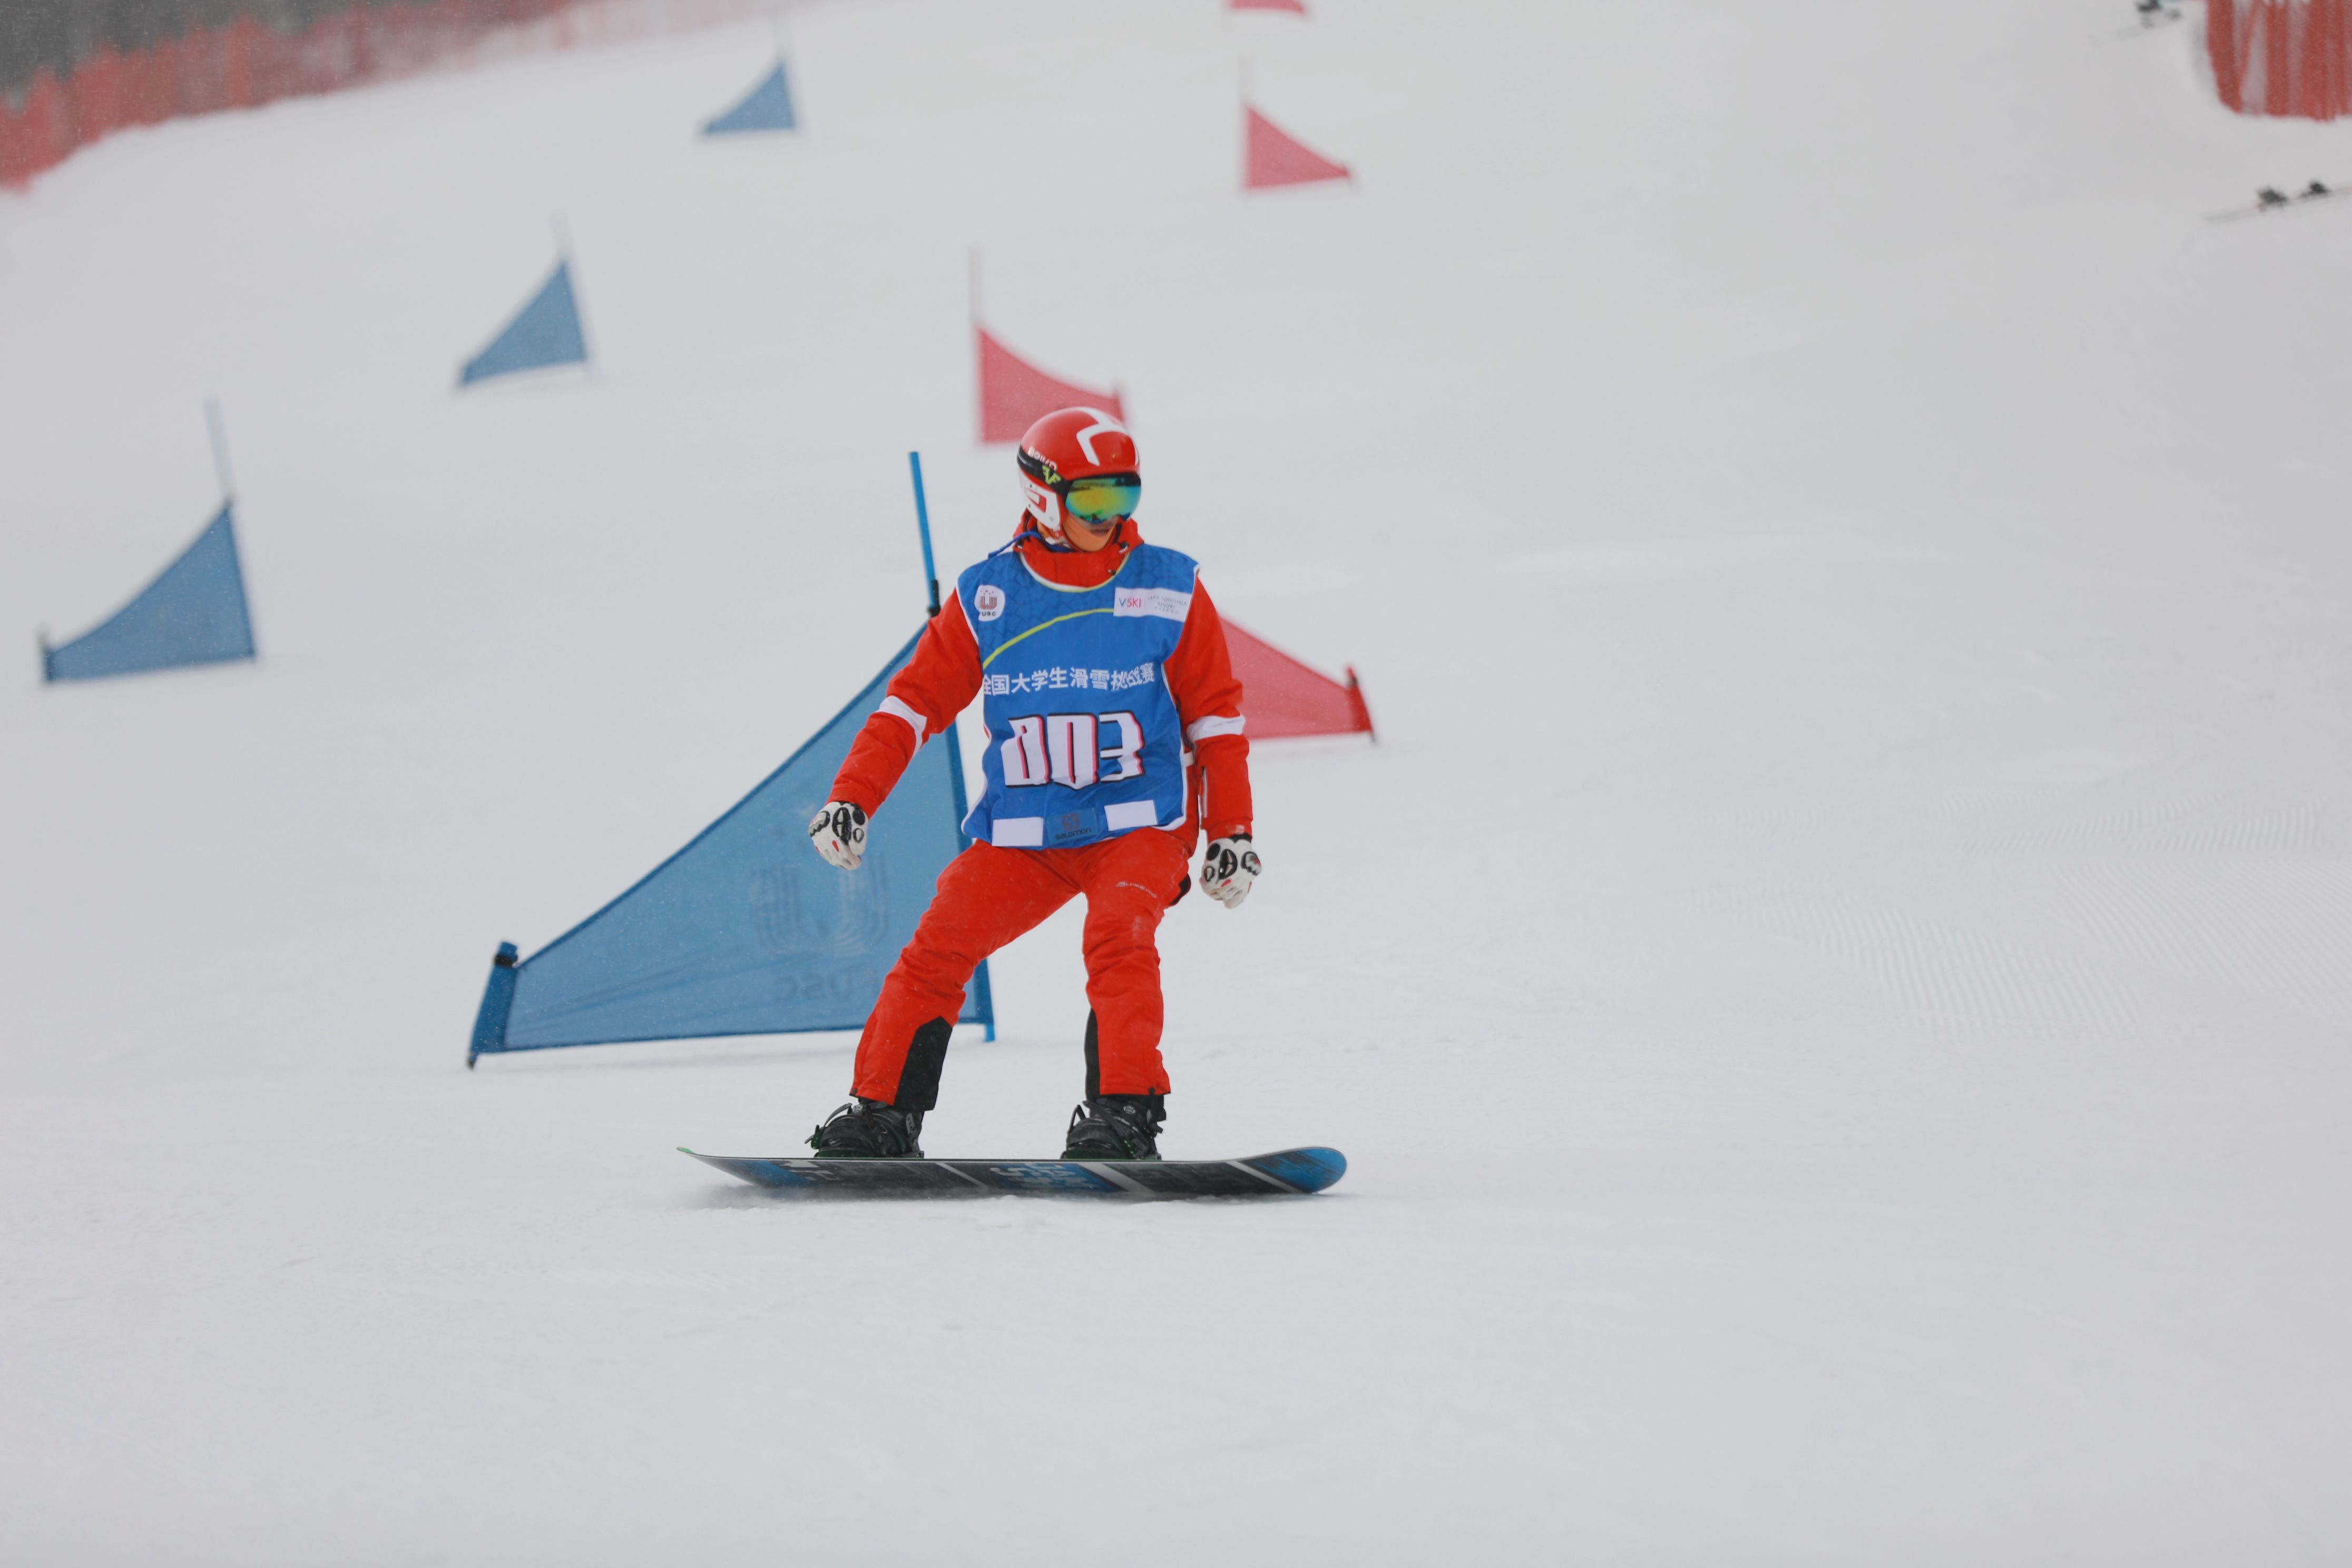 “万科杯”第8届全国大学生滑雪挑战赛（东北赛区）暨第31届世界大学生冬季运动会高山滑雪、单板滑雪项目选拔赛